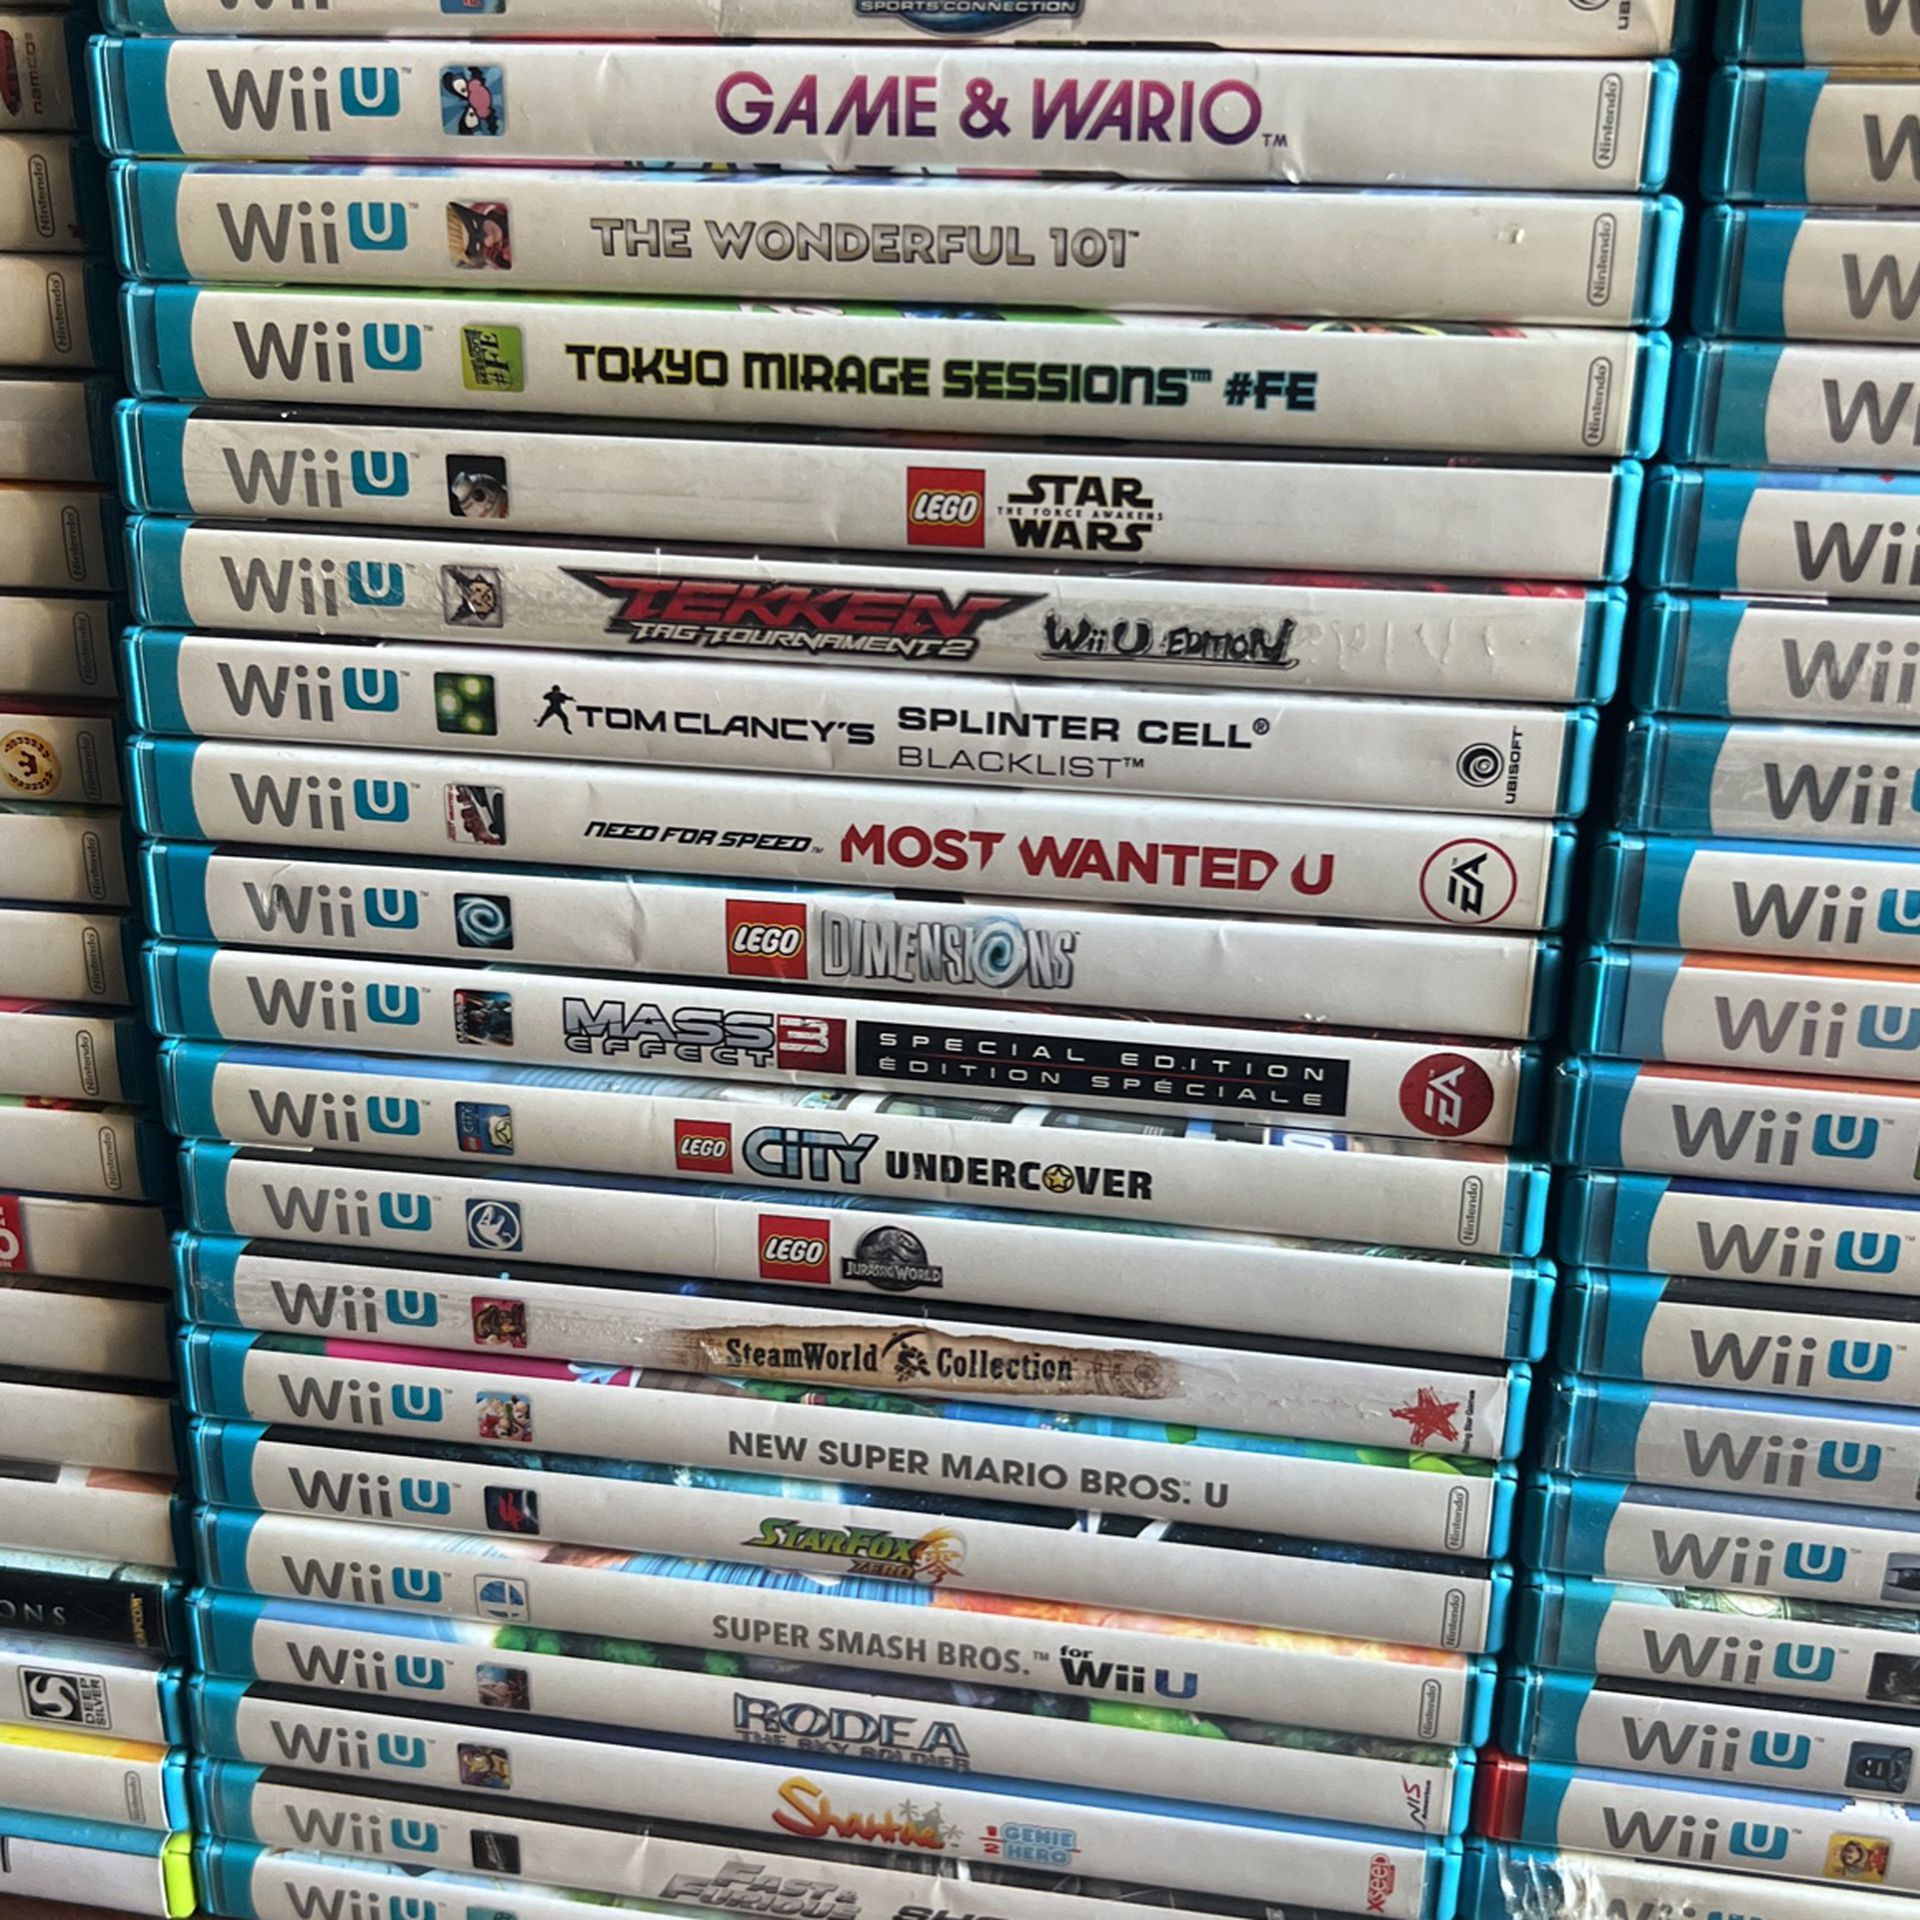 Legend of Zelda: The Wind Waker HD Nintendo Wii U for Sale in Agawam, MA -  OfferUp